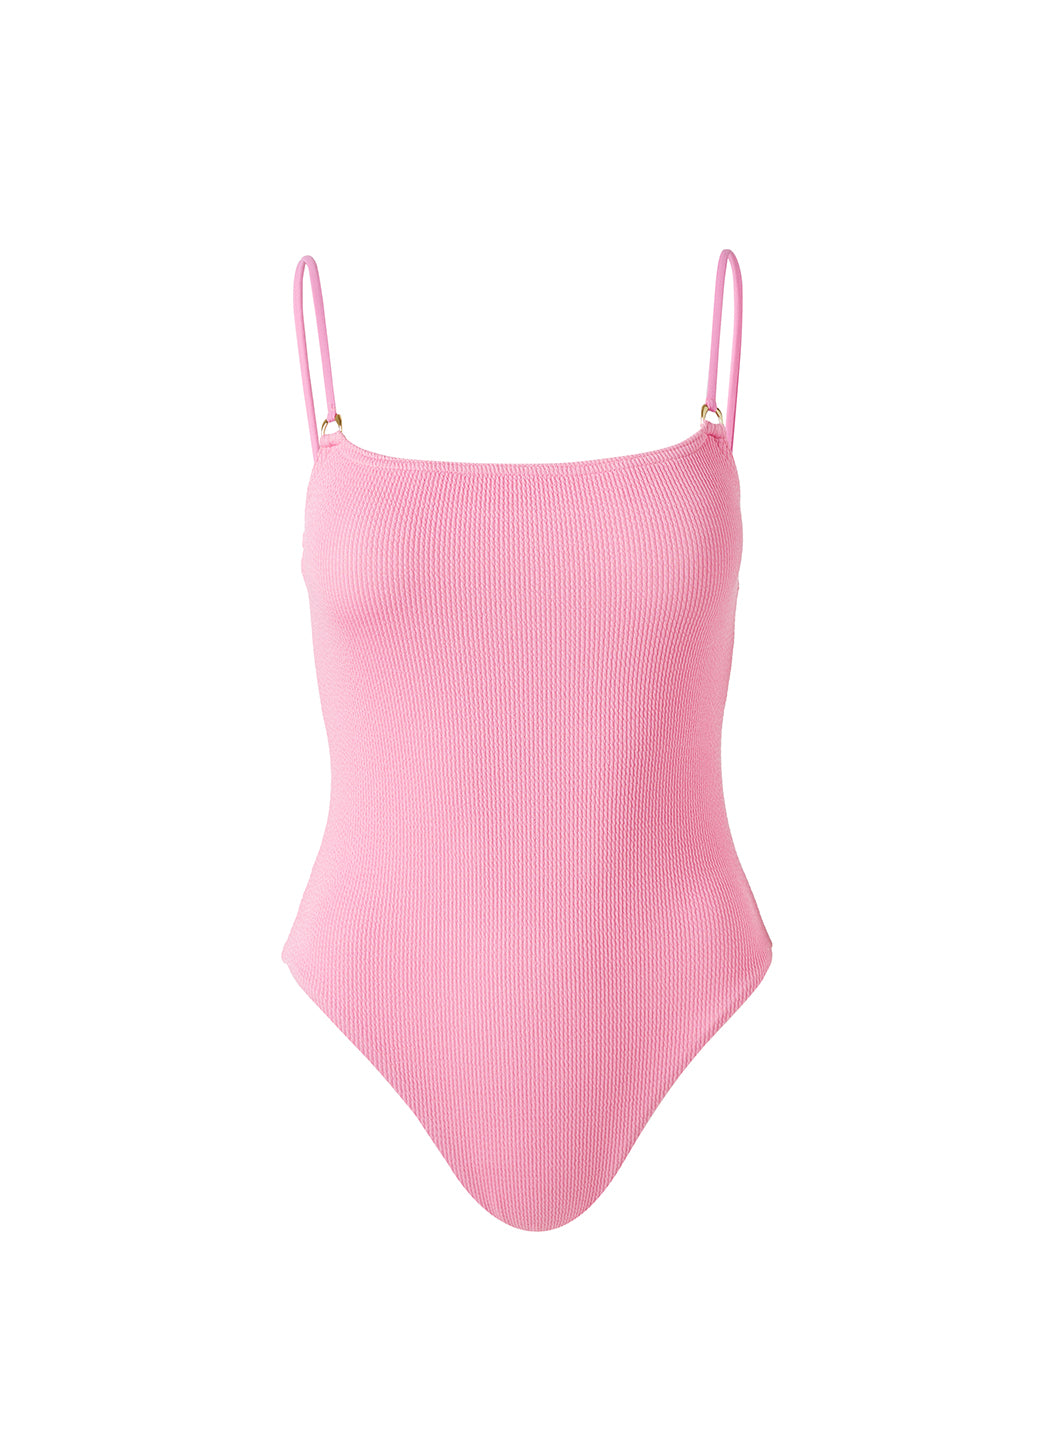 palma pink ridges swimsuit cutouts 2024